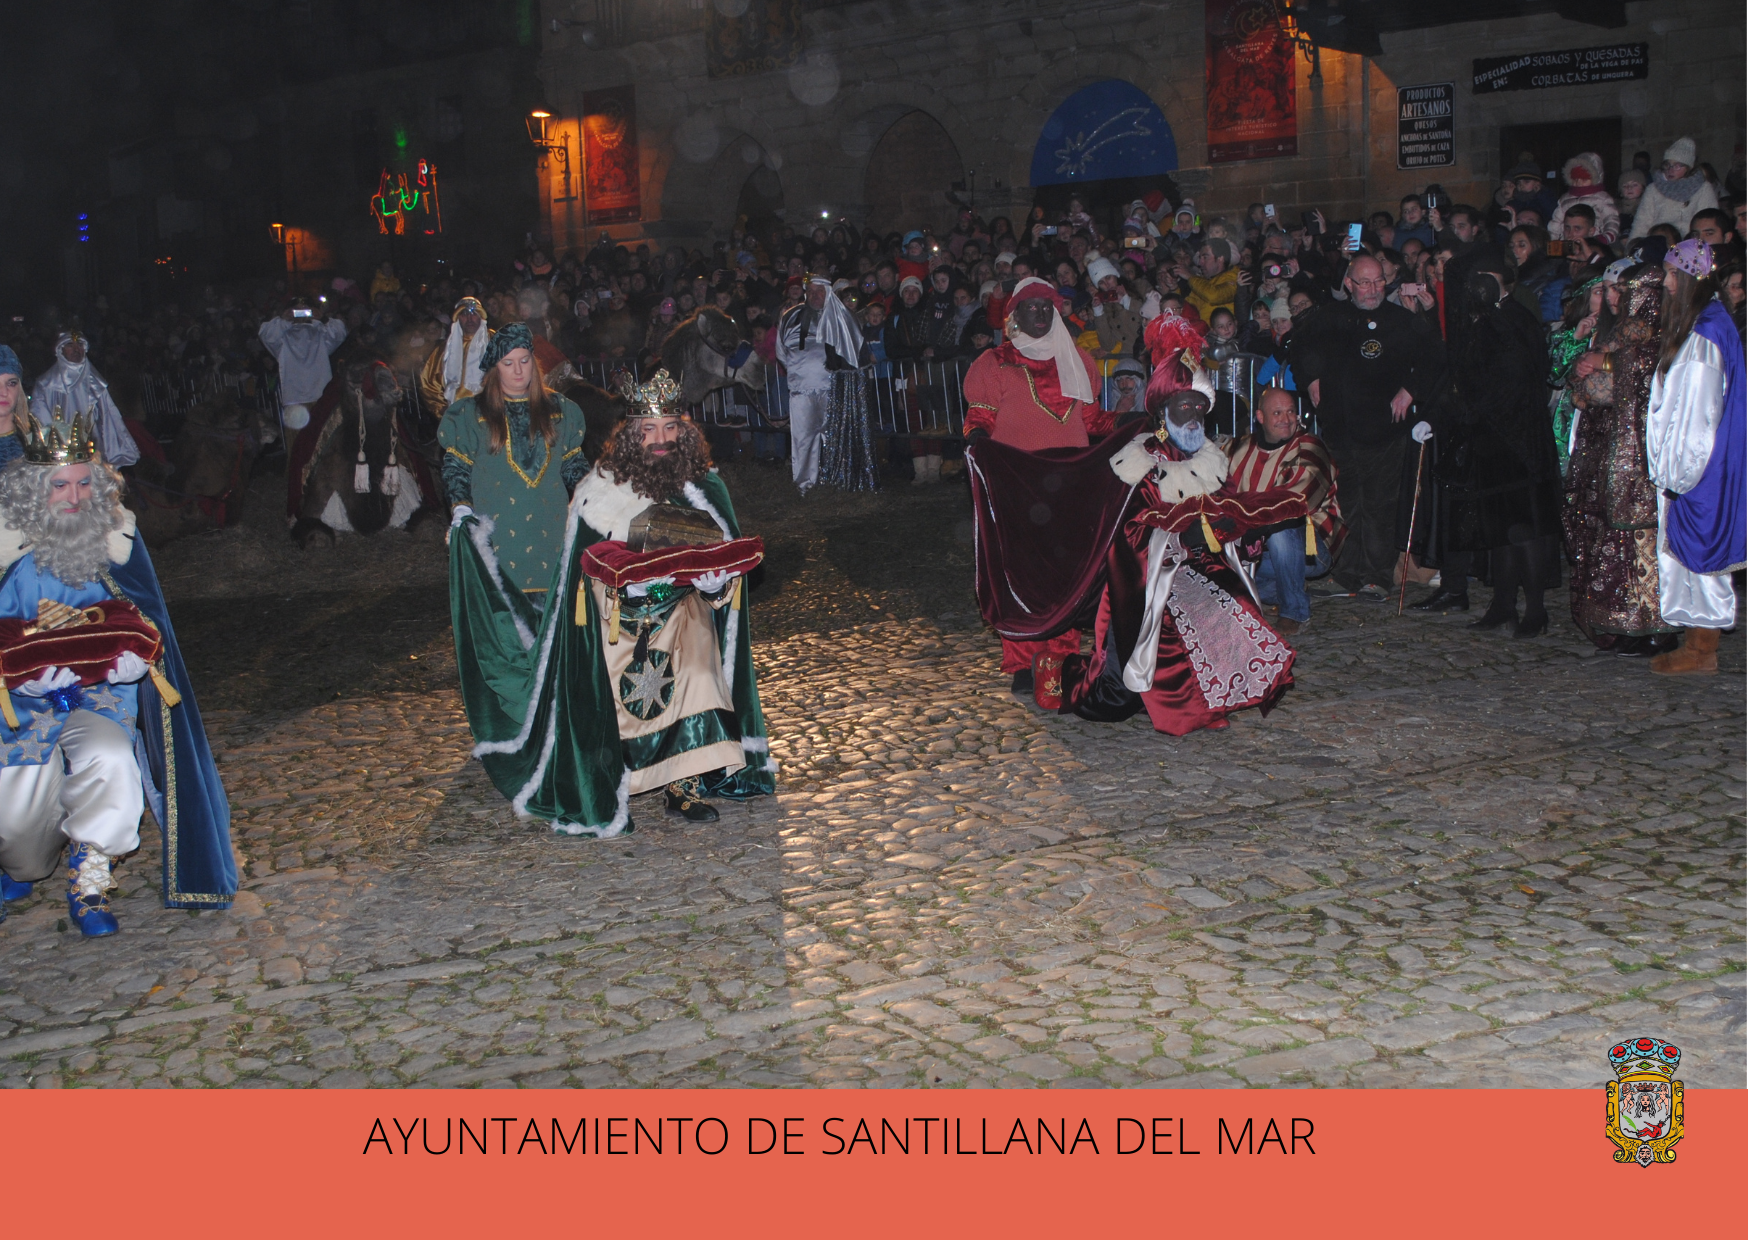 Santillana del Mar cancela el Auto Sacramental y Cabalgata de Reyes por segundo año consecutivo